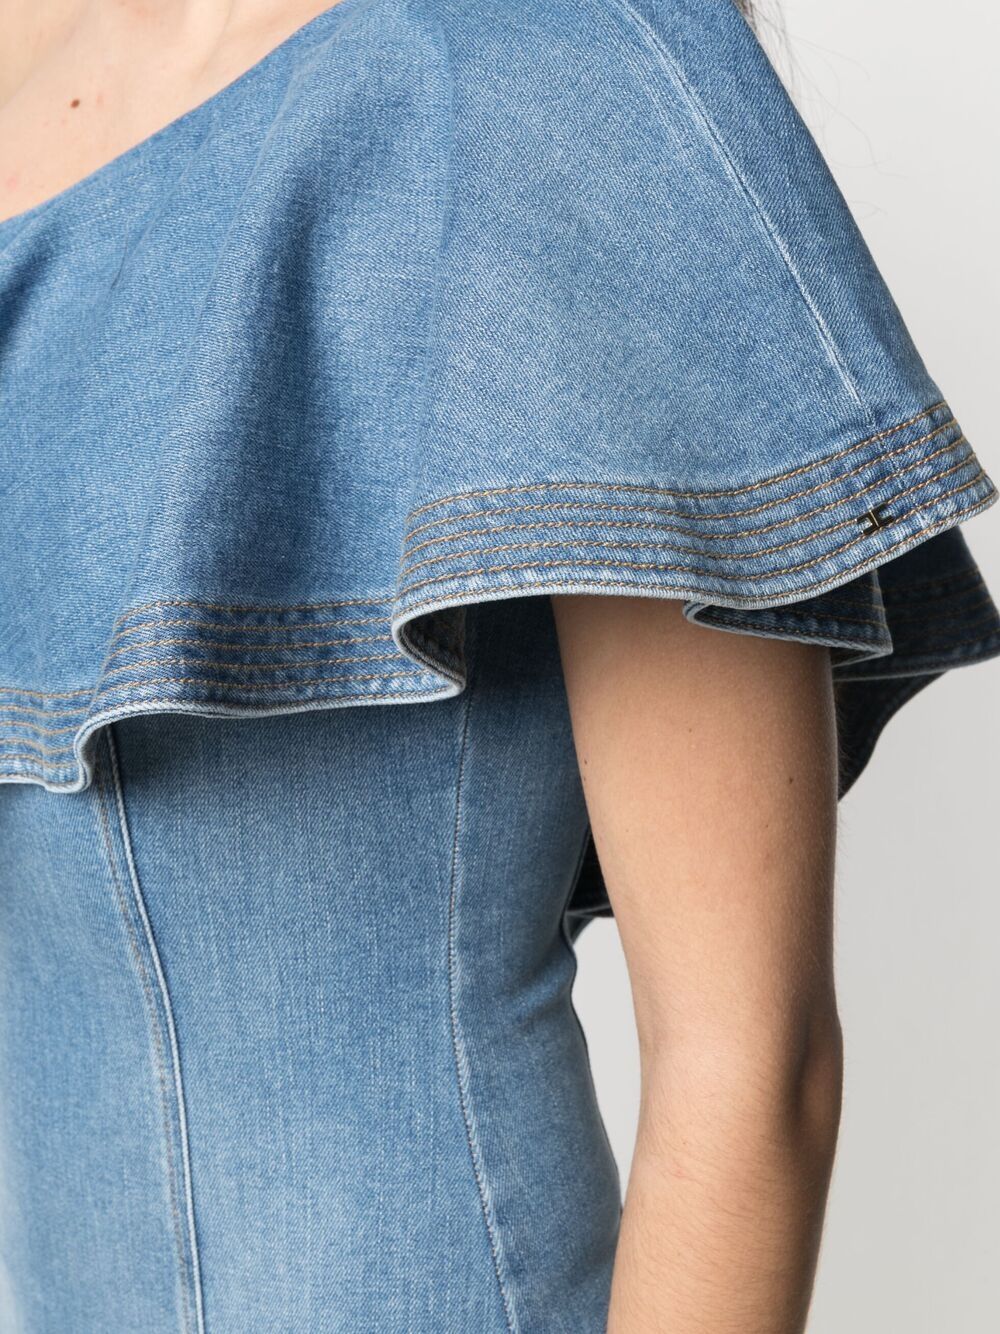 фото Elisabetta franchi джинсовое платье мини на одно плечо